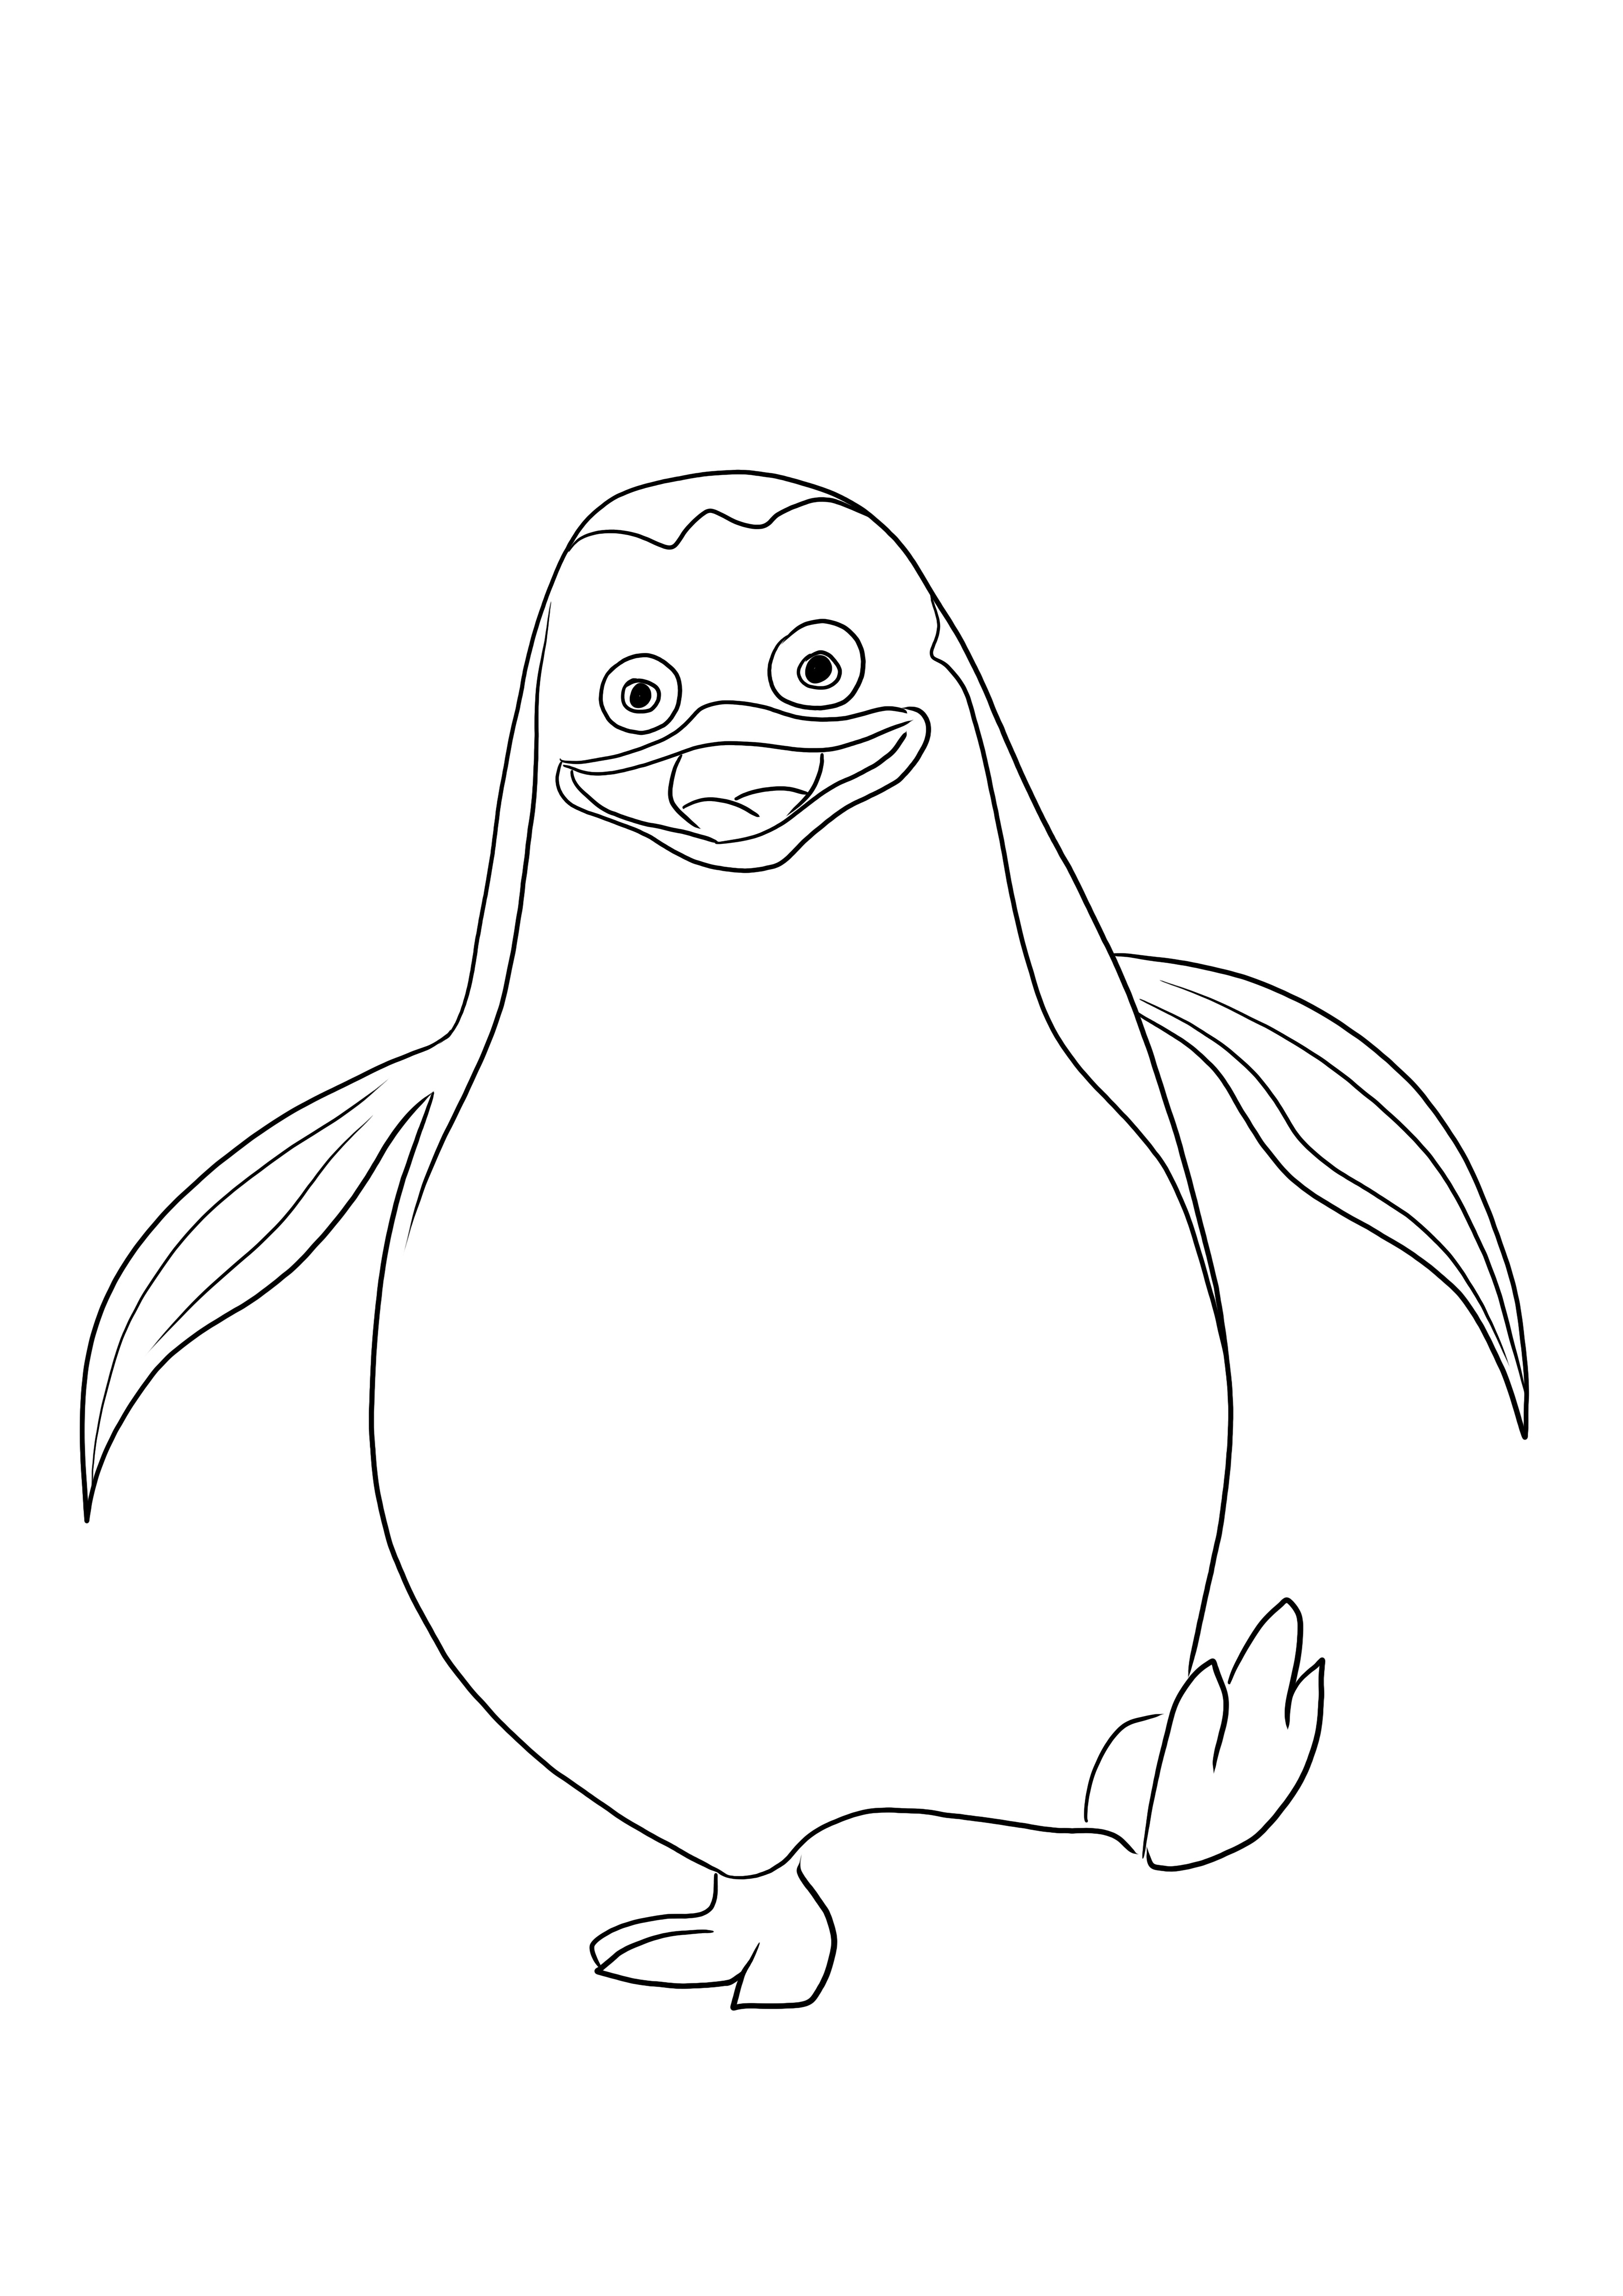 Un'immagine facile da colorare di Private il pinguino pronta per essere stampata e colorata